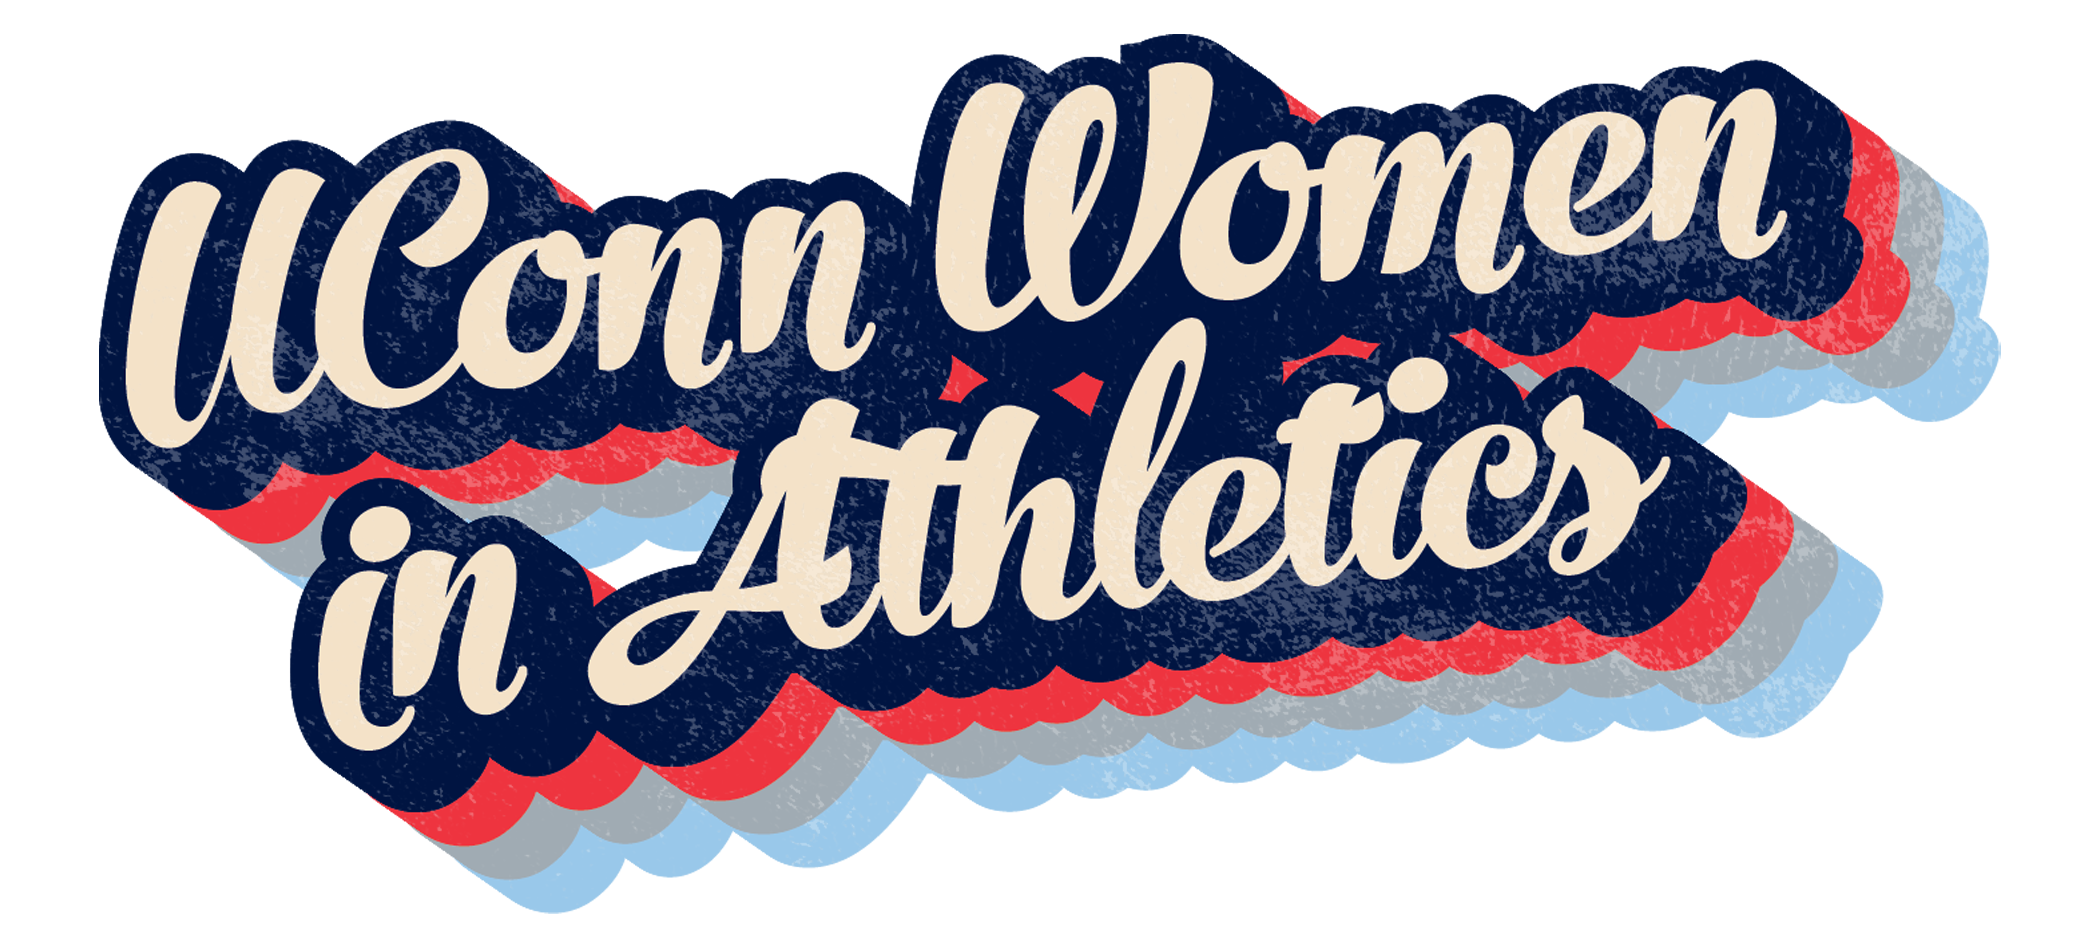 UConn Women in Athletics